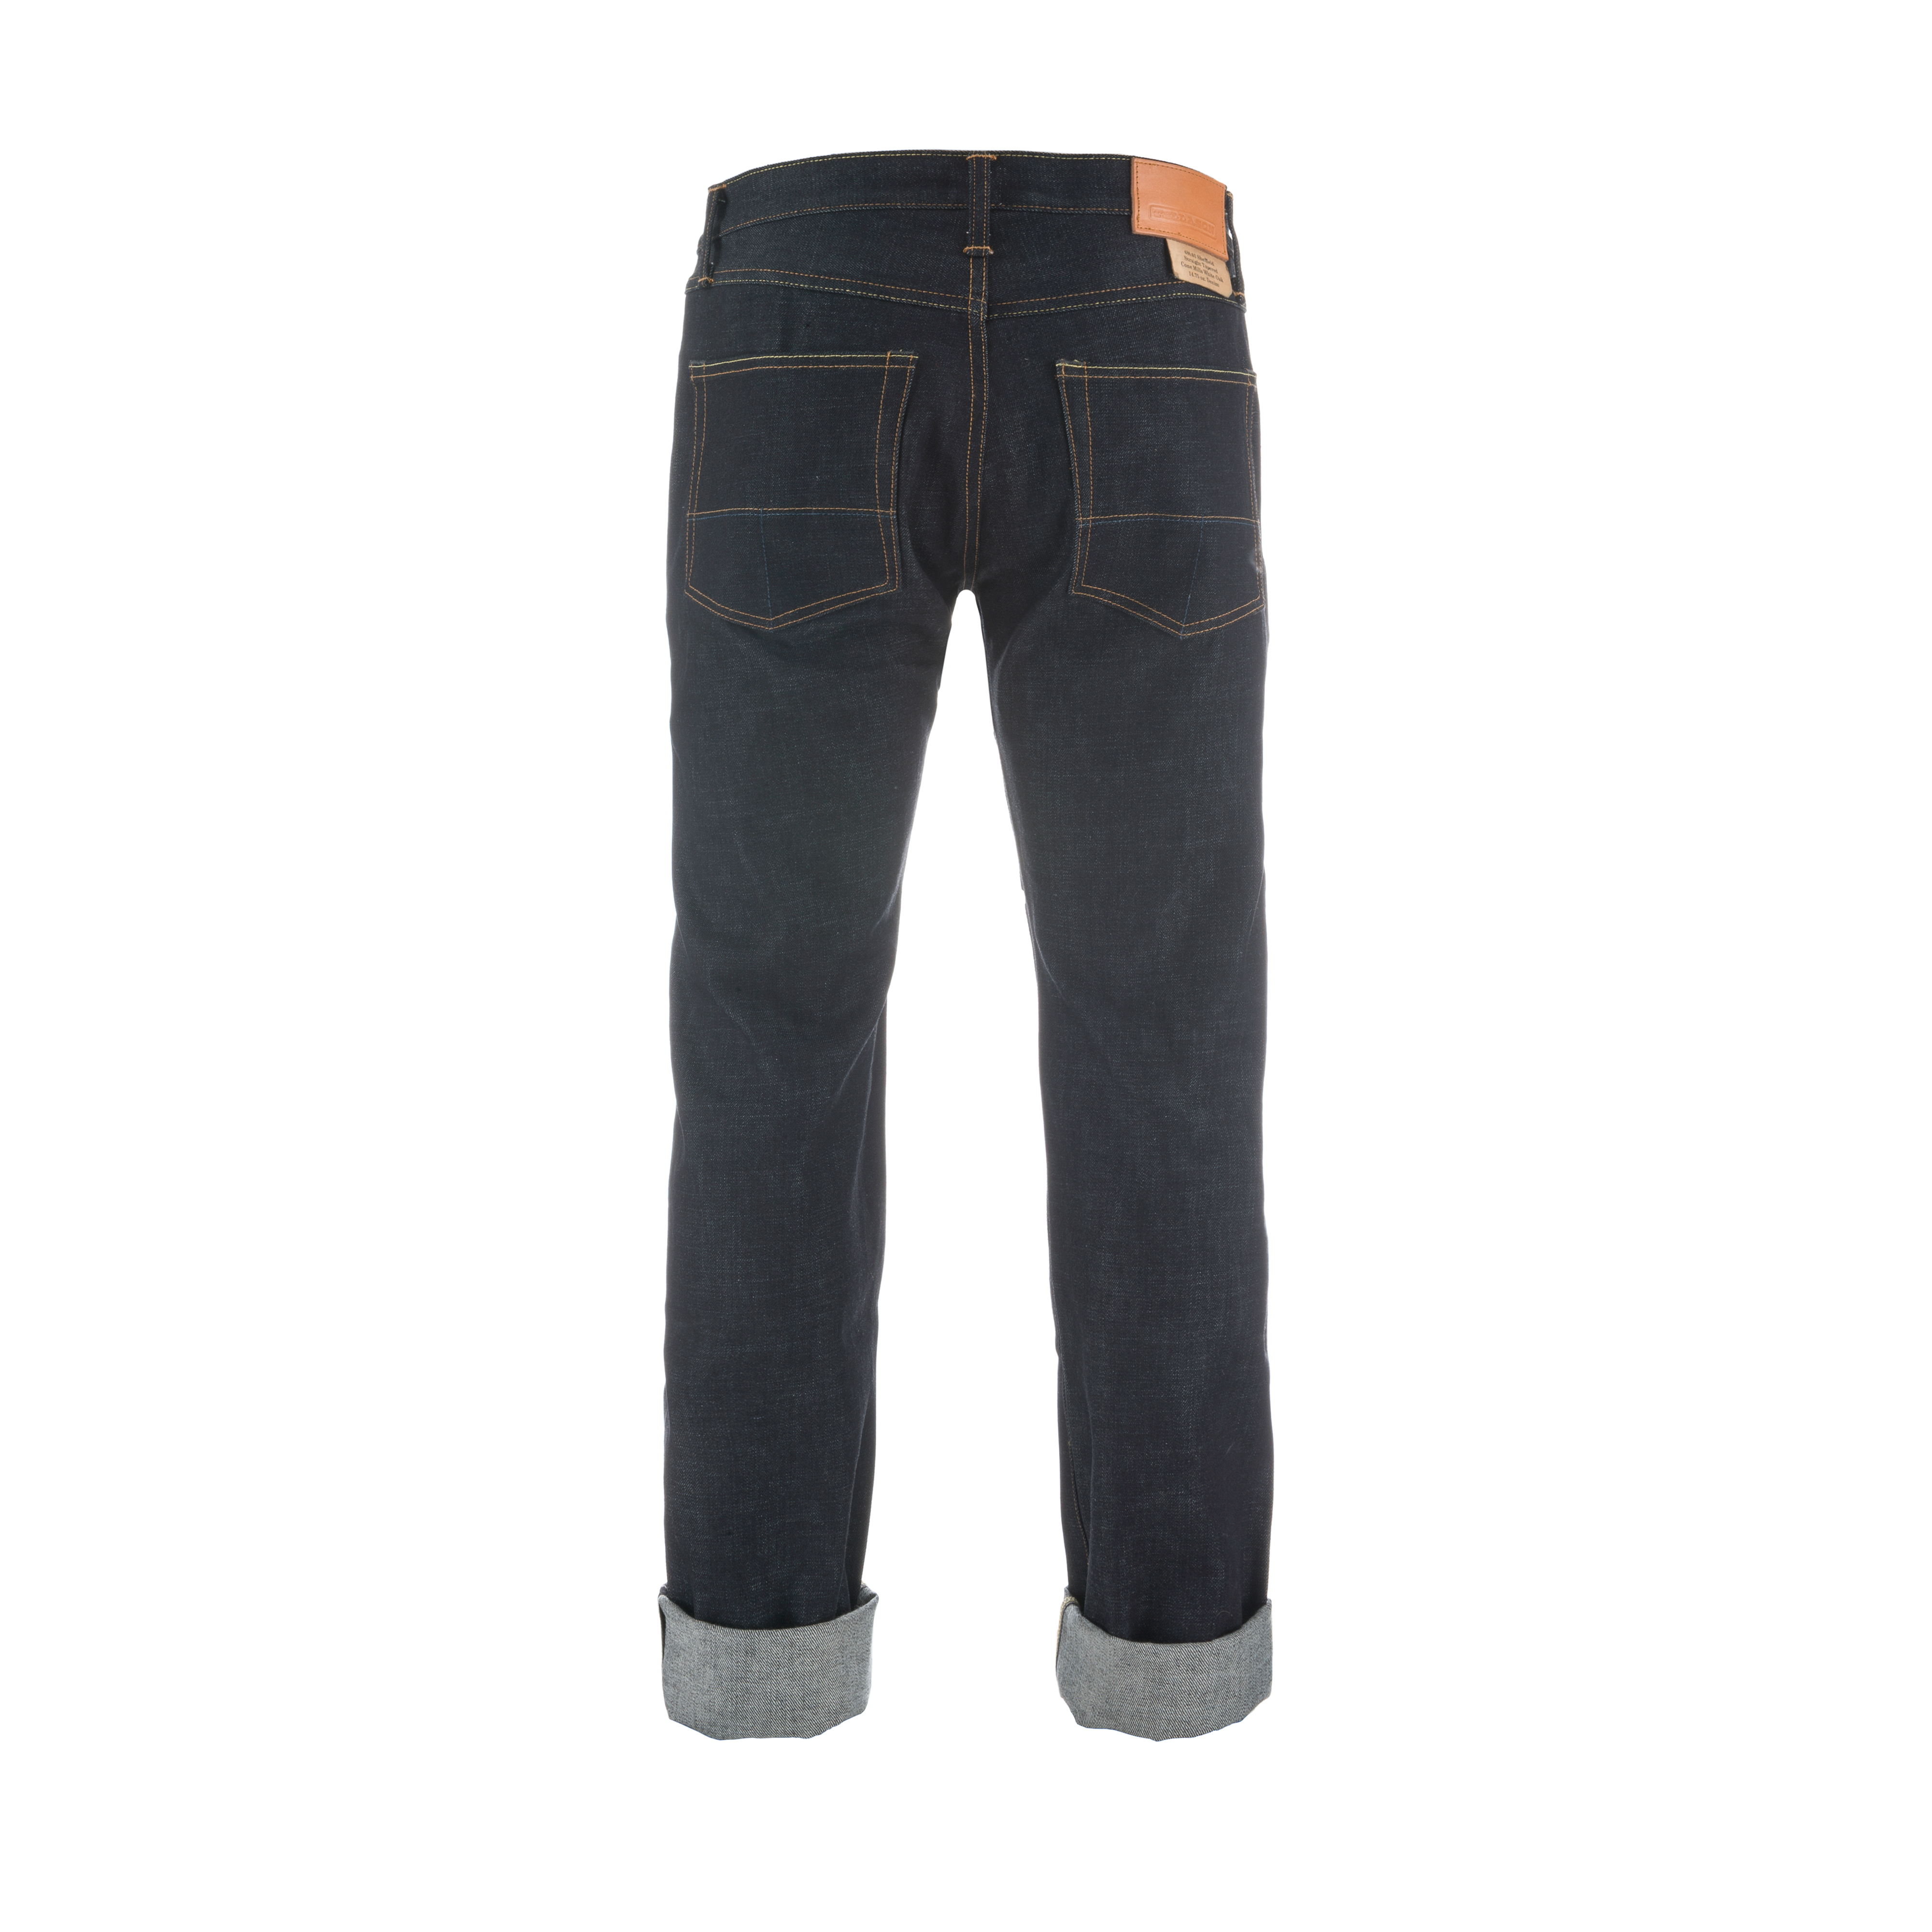 Sheffield 14.75oz Raw Denim Jeans Indigo – B74